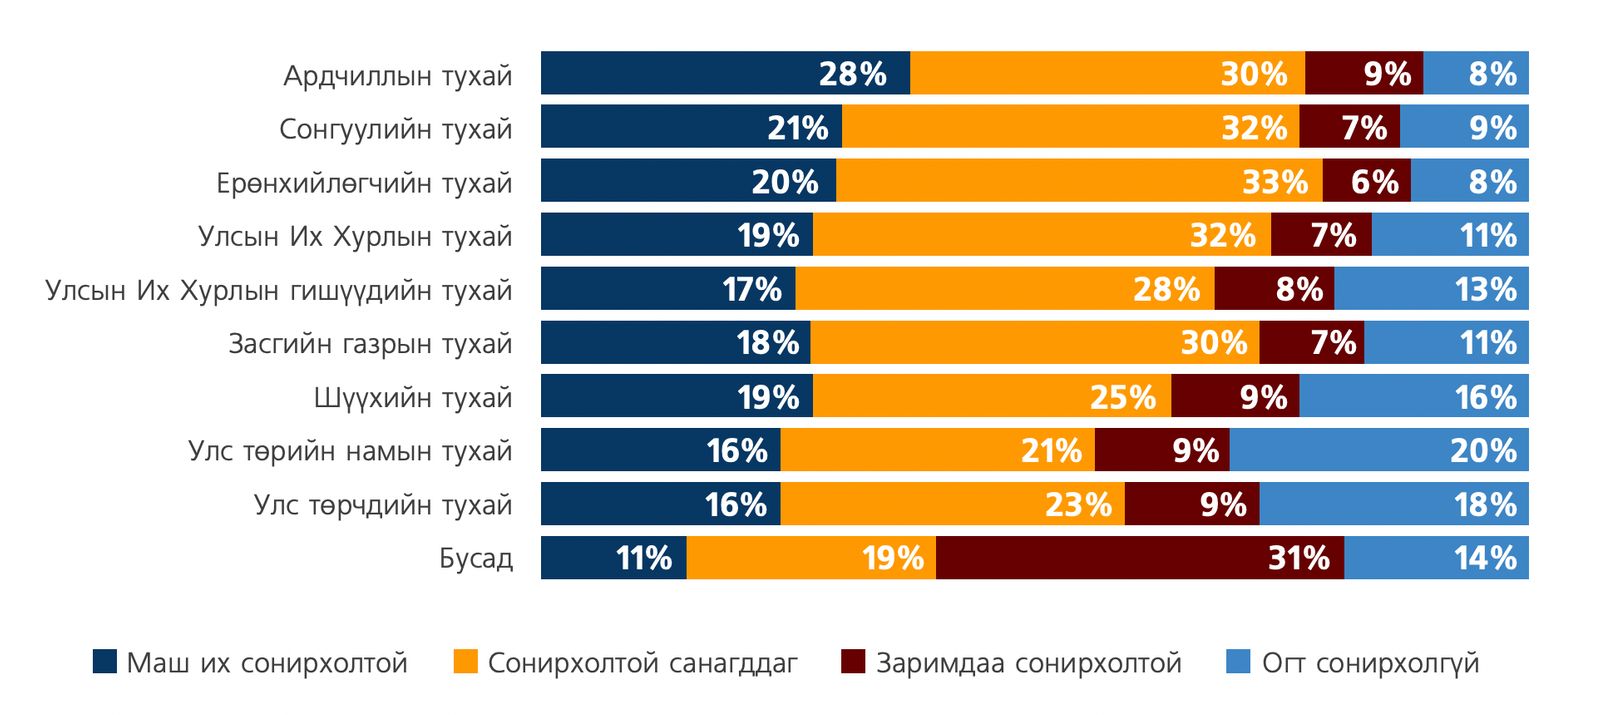 Z세대의 22%는 해당 지역구에서 선출된 국회의원, 43%는 시의회 대표를 몰라.jpg